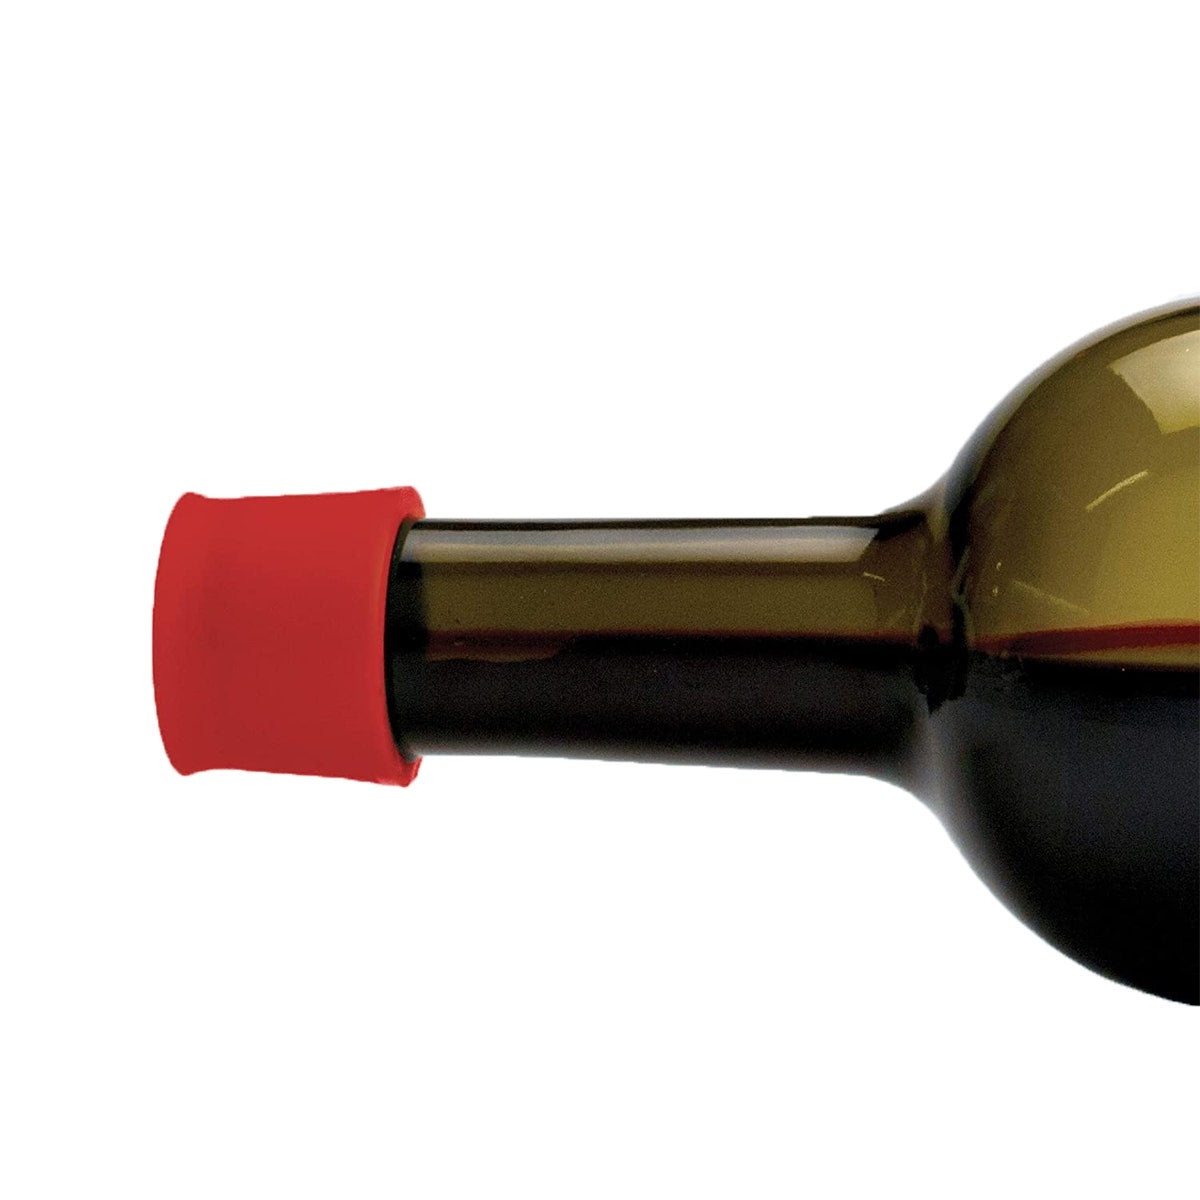 Reusable Silicone Wine Bottle Cap 2 pcs each - 40 Pcs